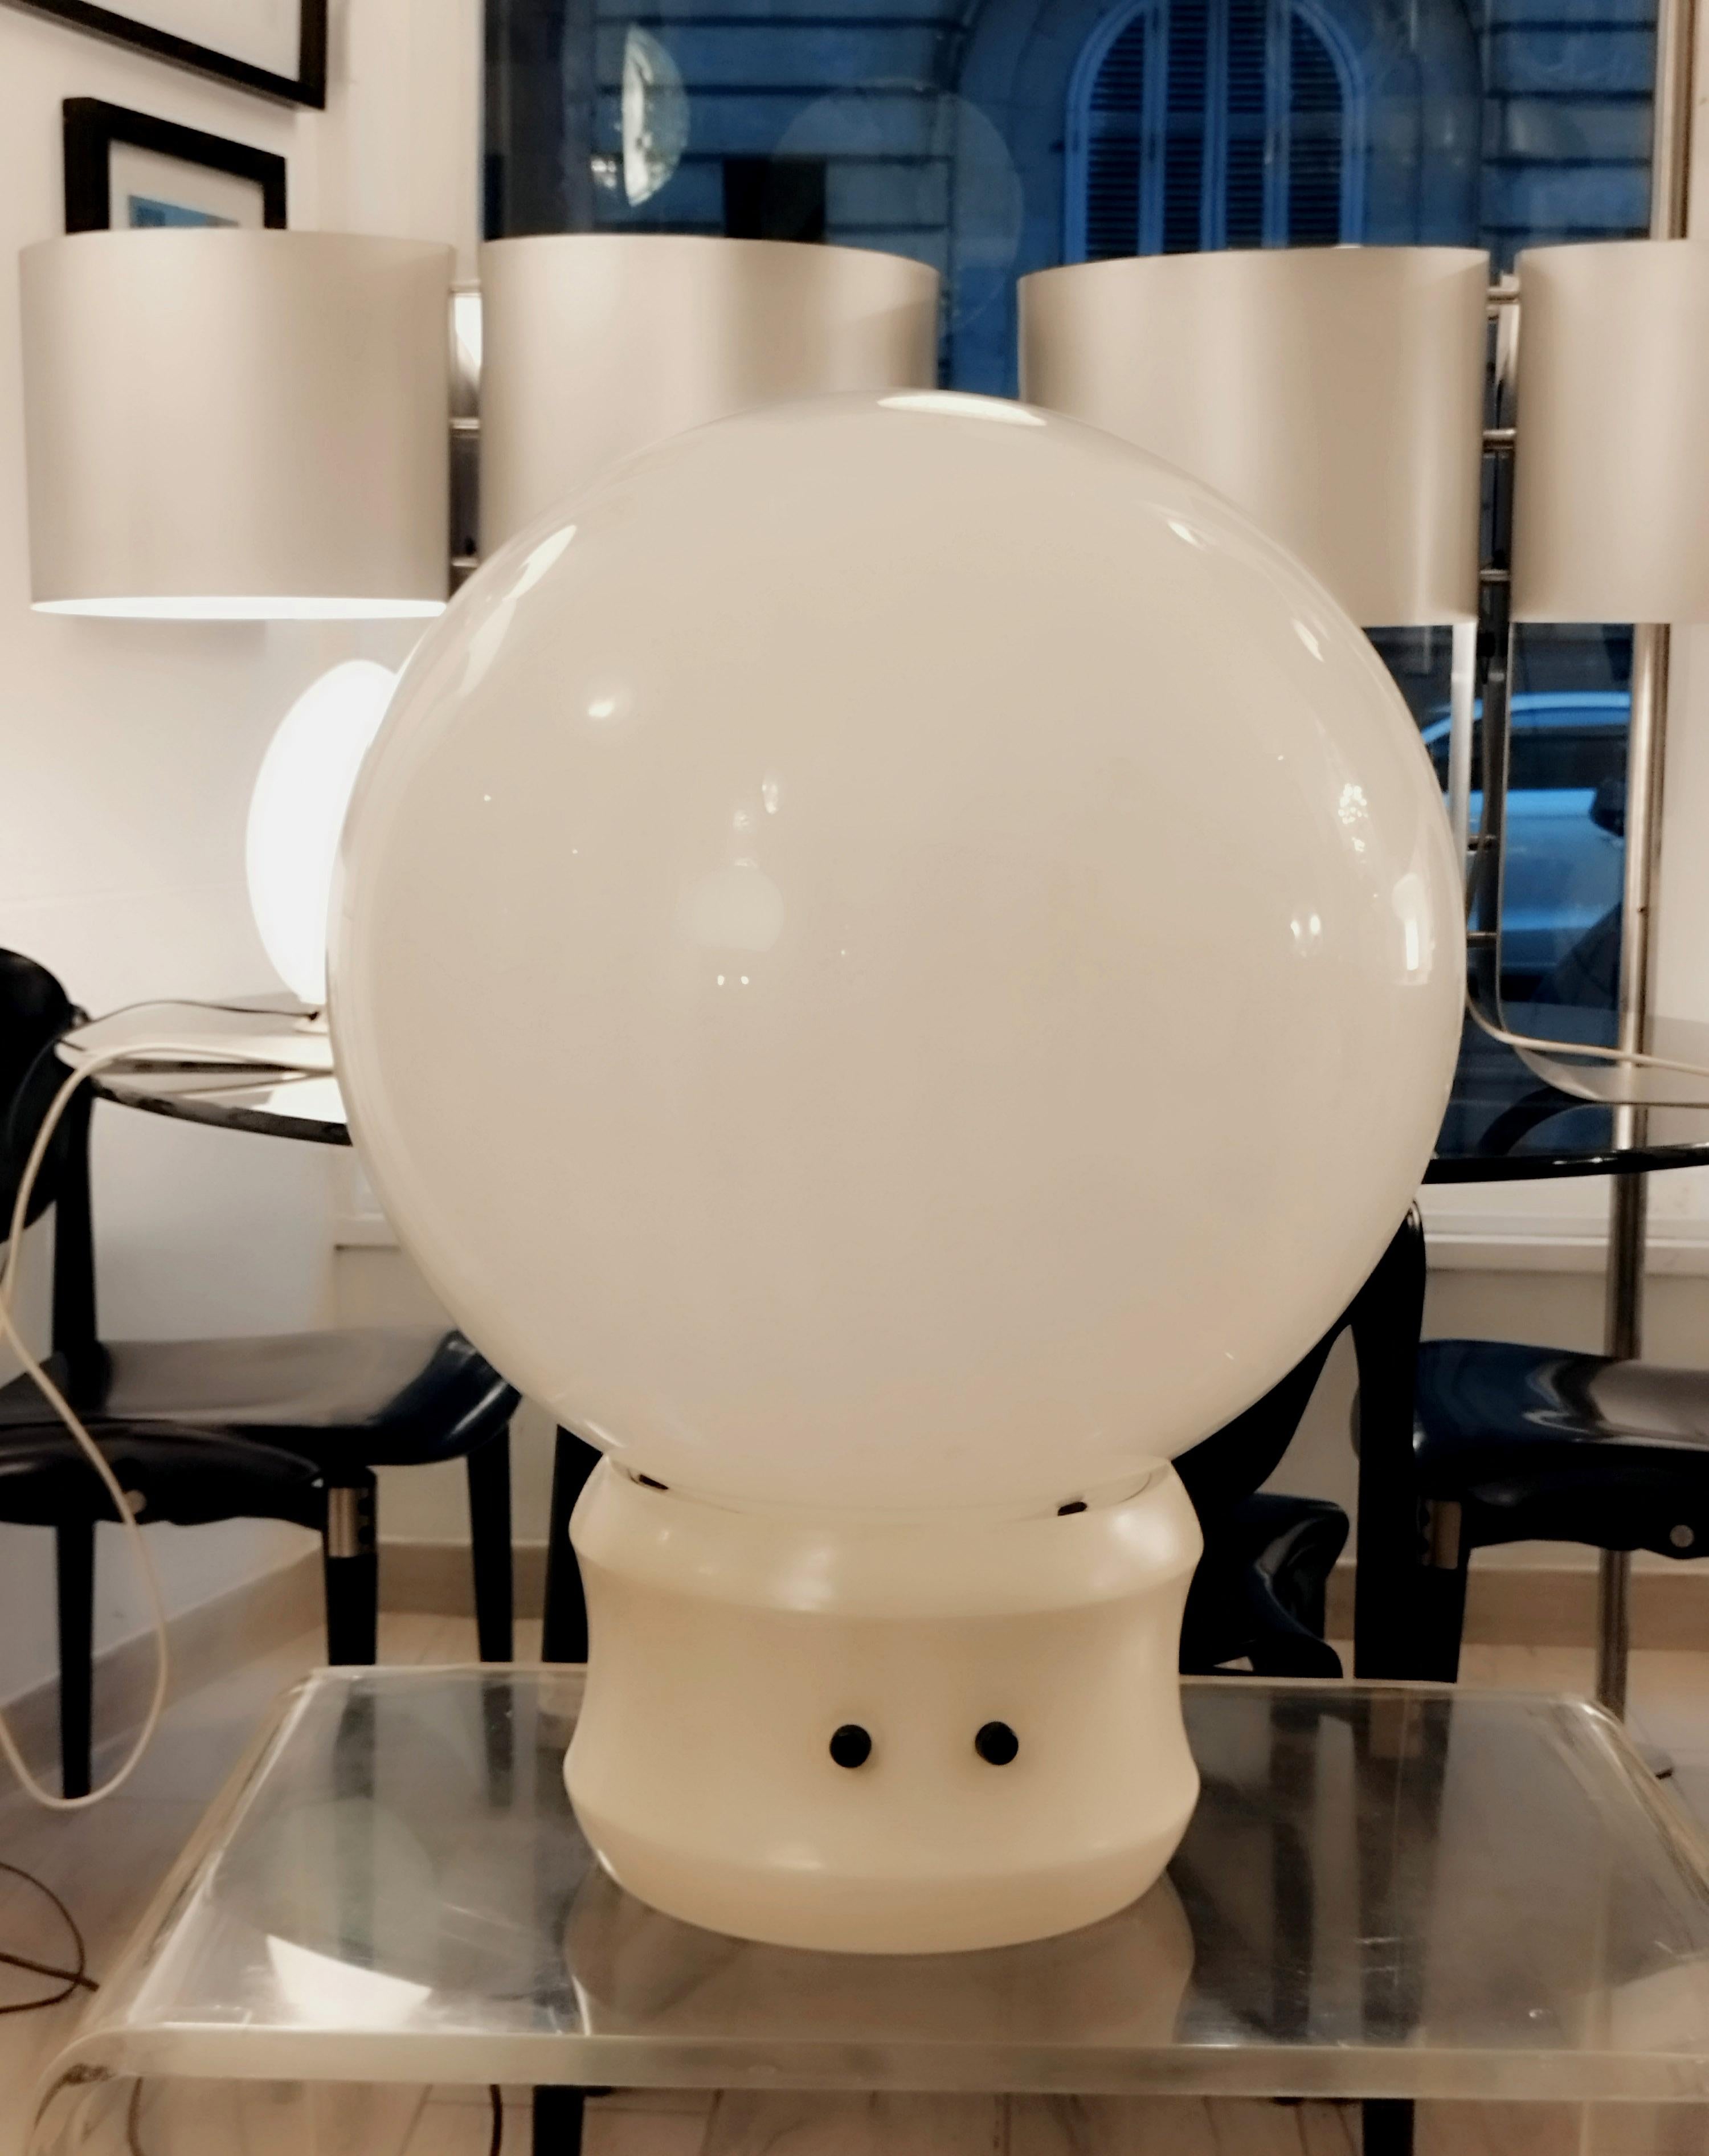 Sfera Gigante grande Tisch- oder Stehleuchte von Elios Martinelli für Martinelli Luce.
Der weiße Metallsockel mit zwei verschiedenen Schaltern trägt einen mattierten Glasschirm mit einem Durchmesser von 50 cm.